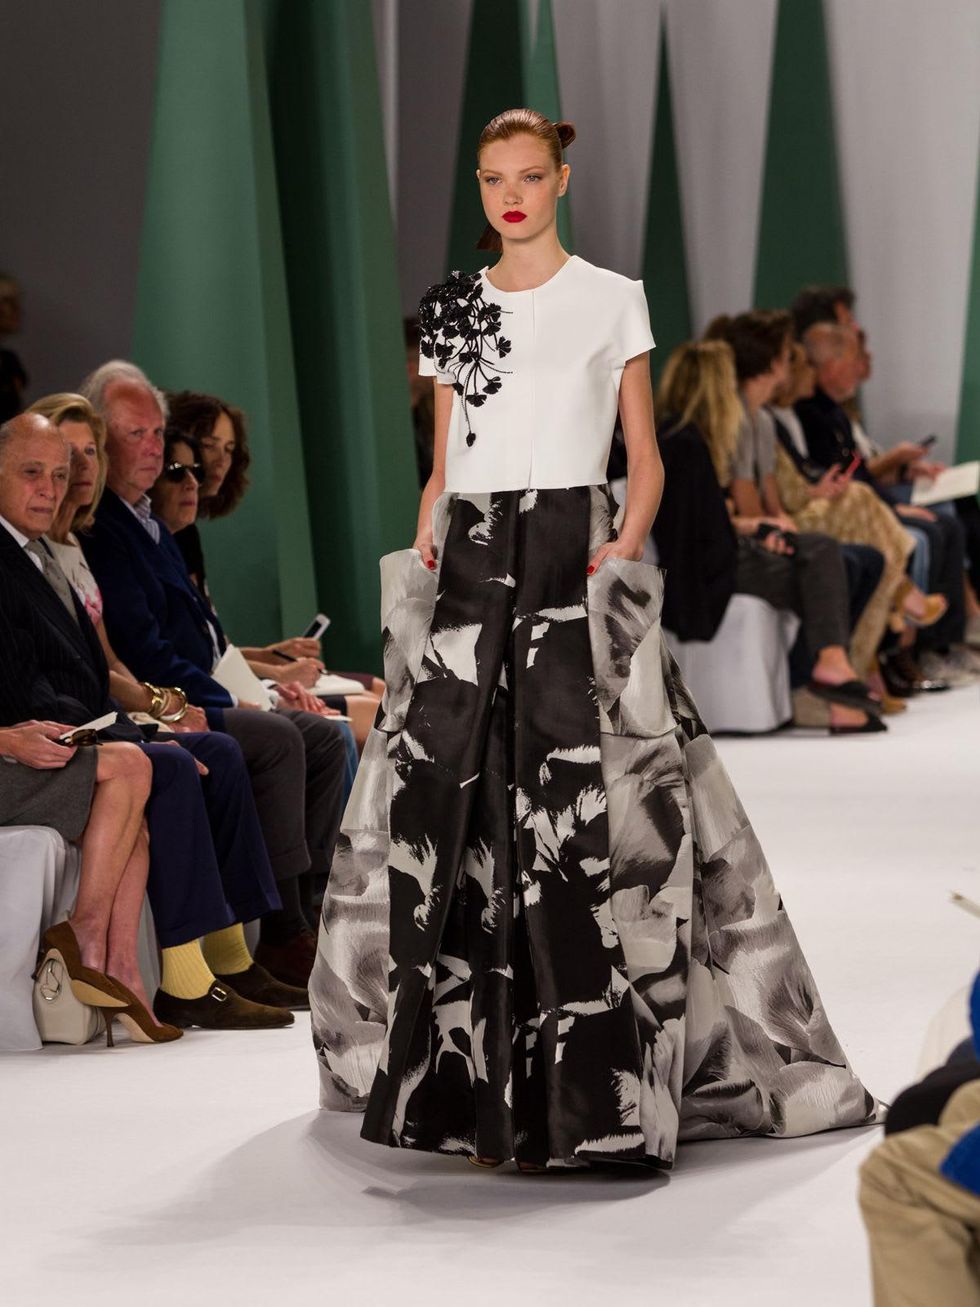 Fashion Week spring 2015 Carolina Herrera black-and-white gown